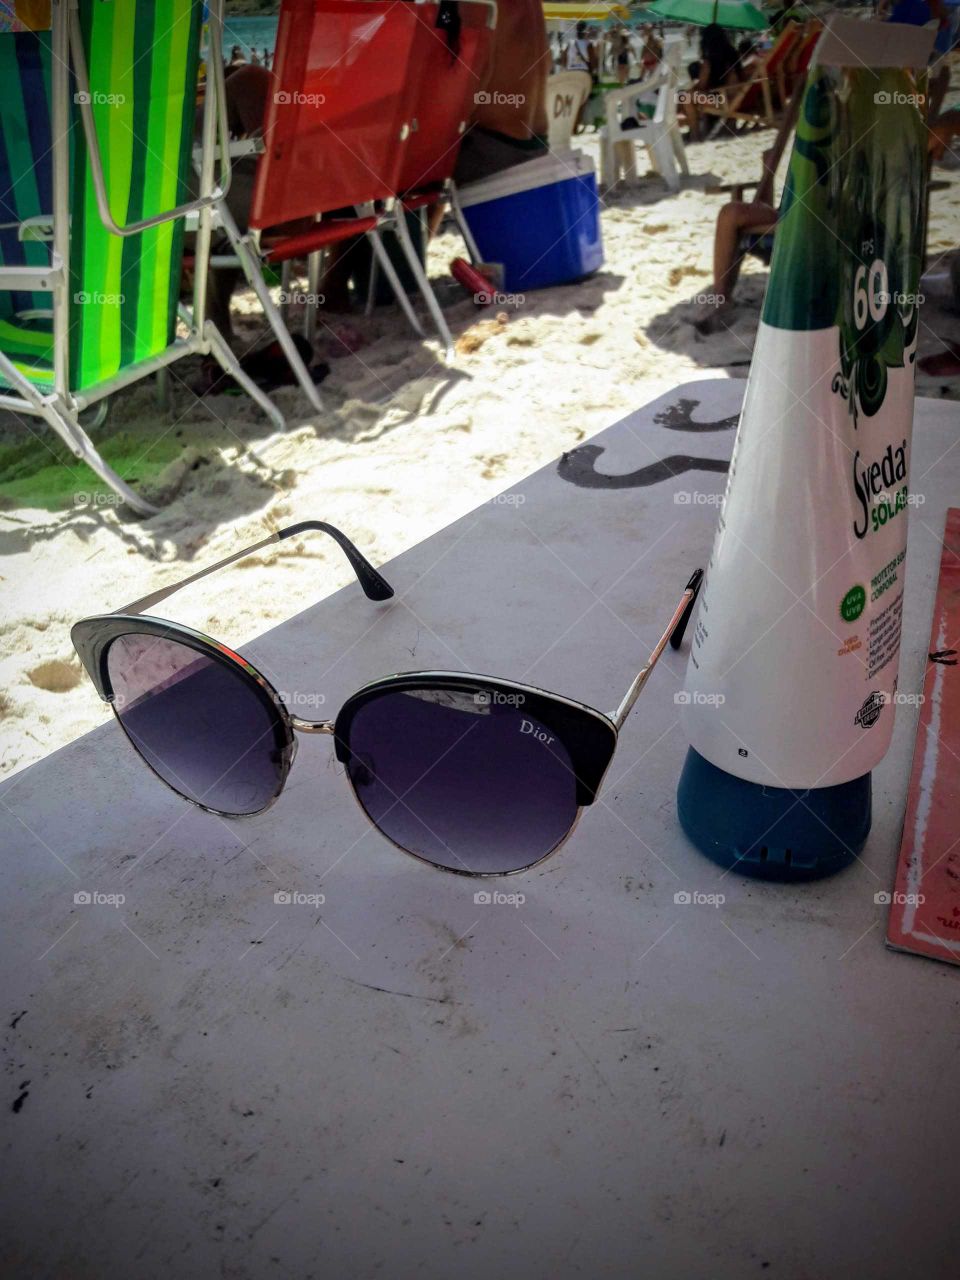 Acessórios para ir a praia, óculos escuros, bronzeador e cadeiras de Praia.